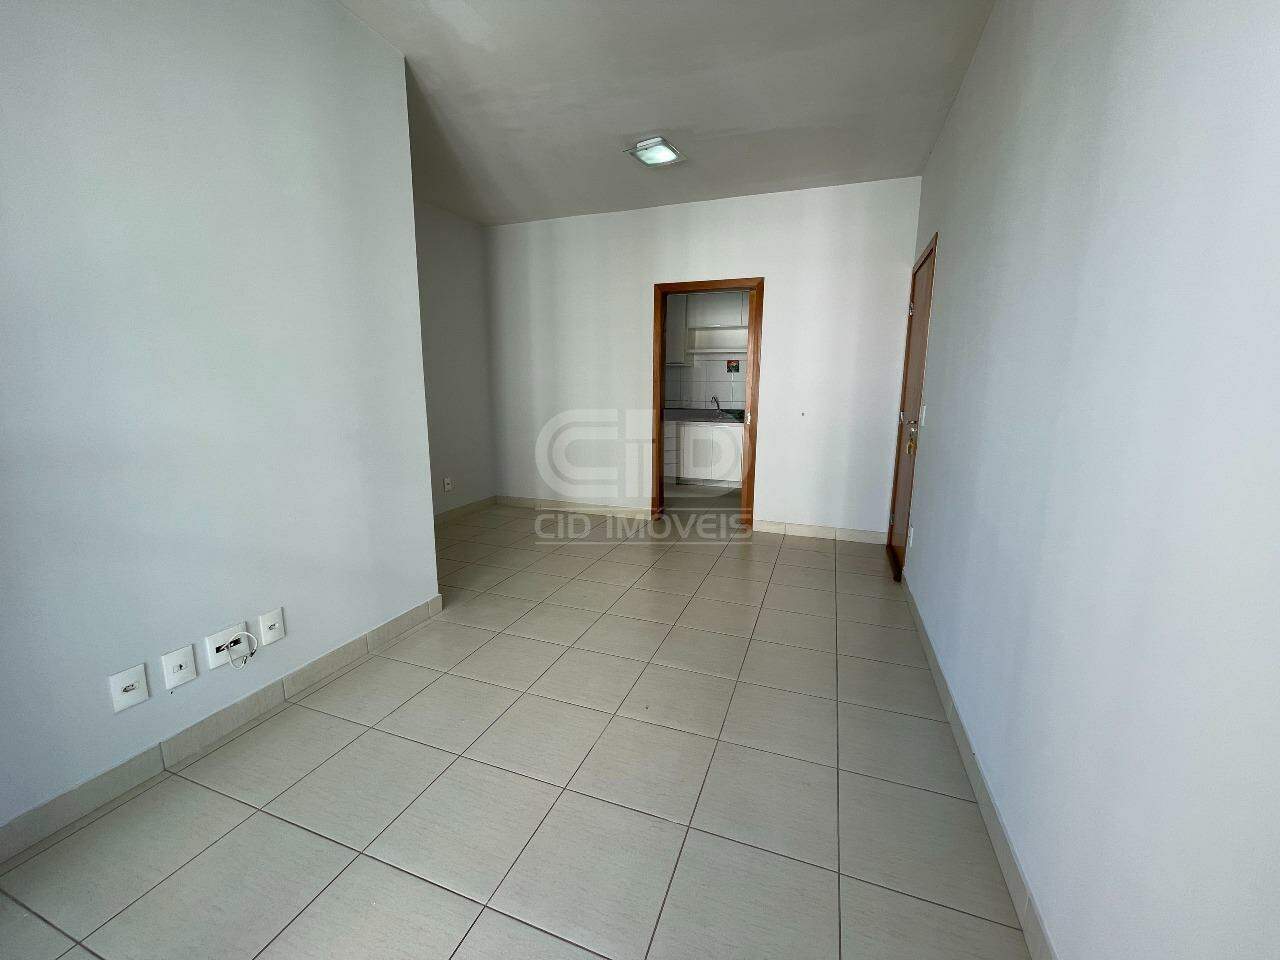 Apartamento, 3 quartos, 62 m² - Foto 3